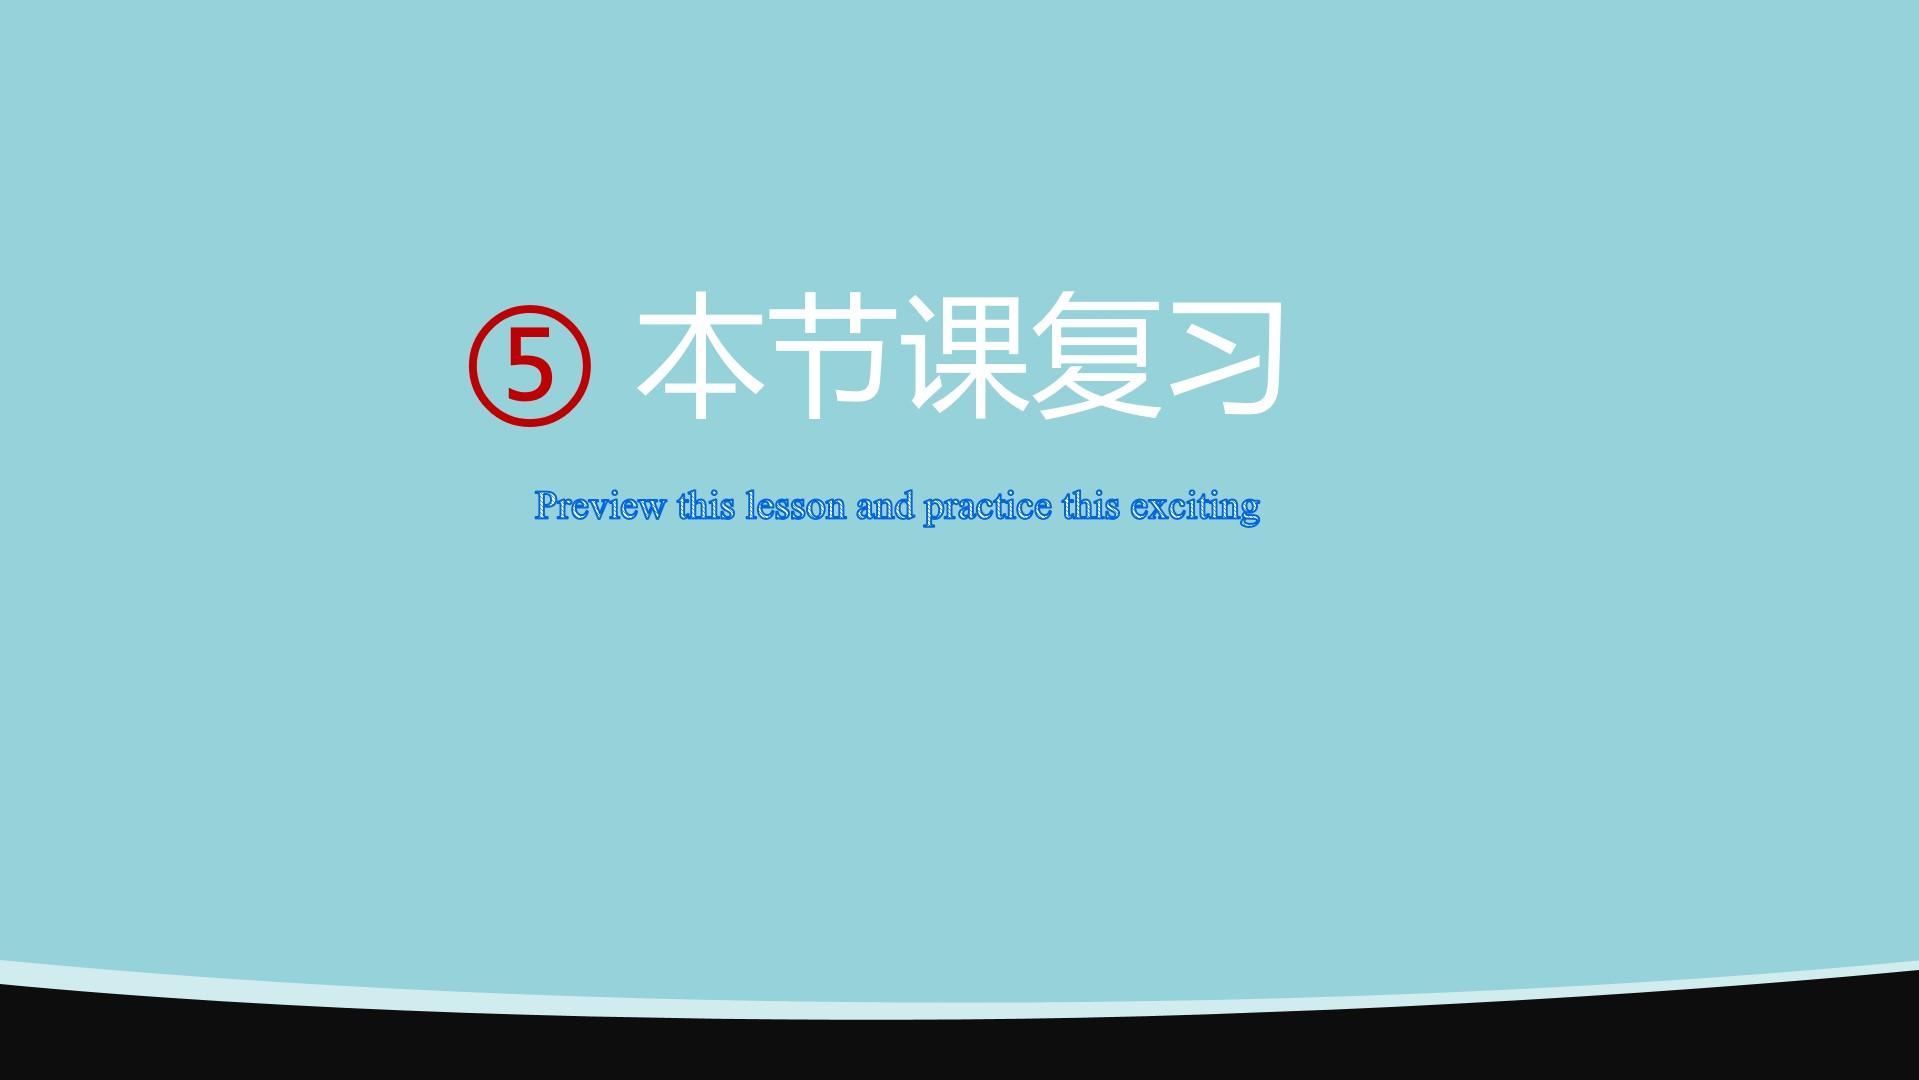 教育教学黑色青色简洁标准preview lesson practice 云素材PPT模板1672687397289